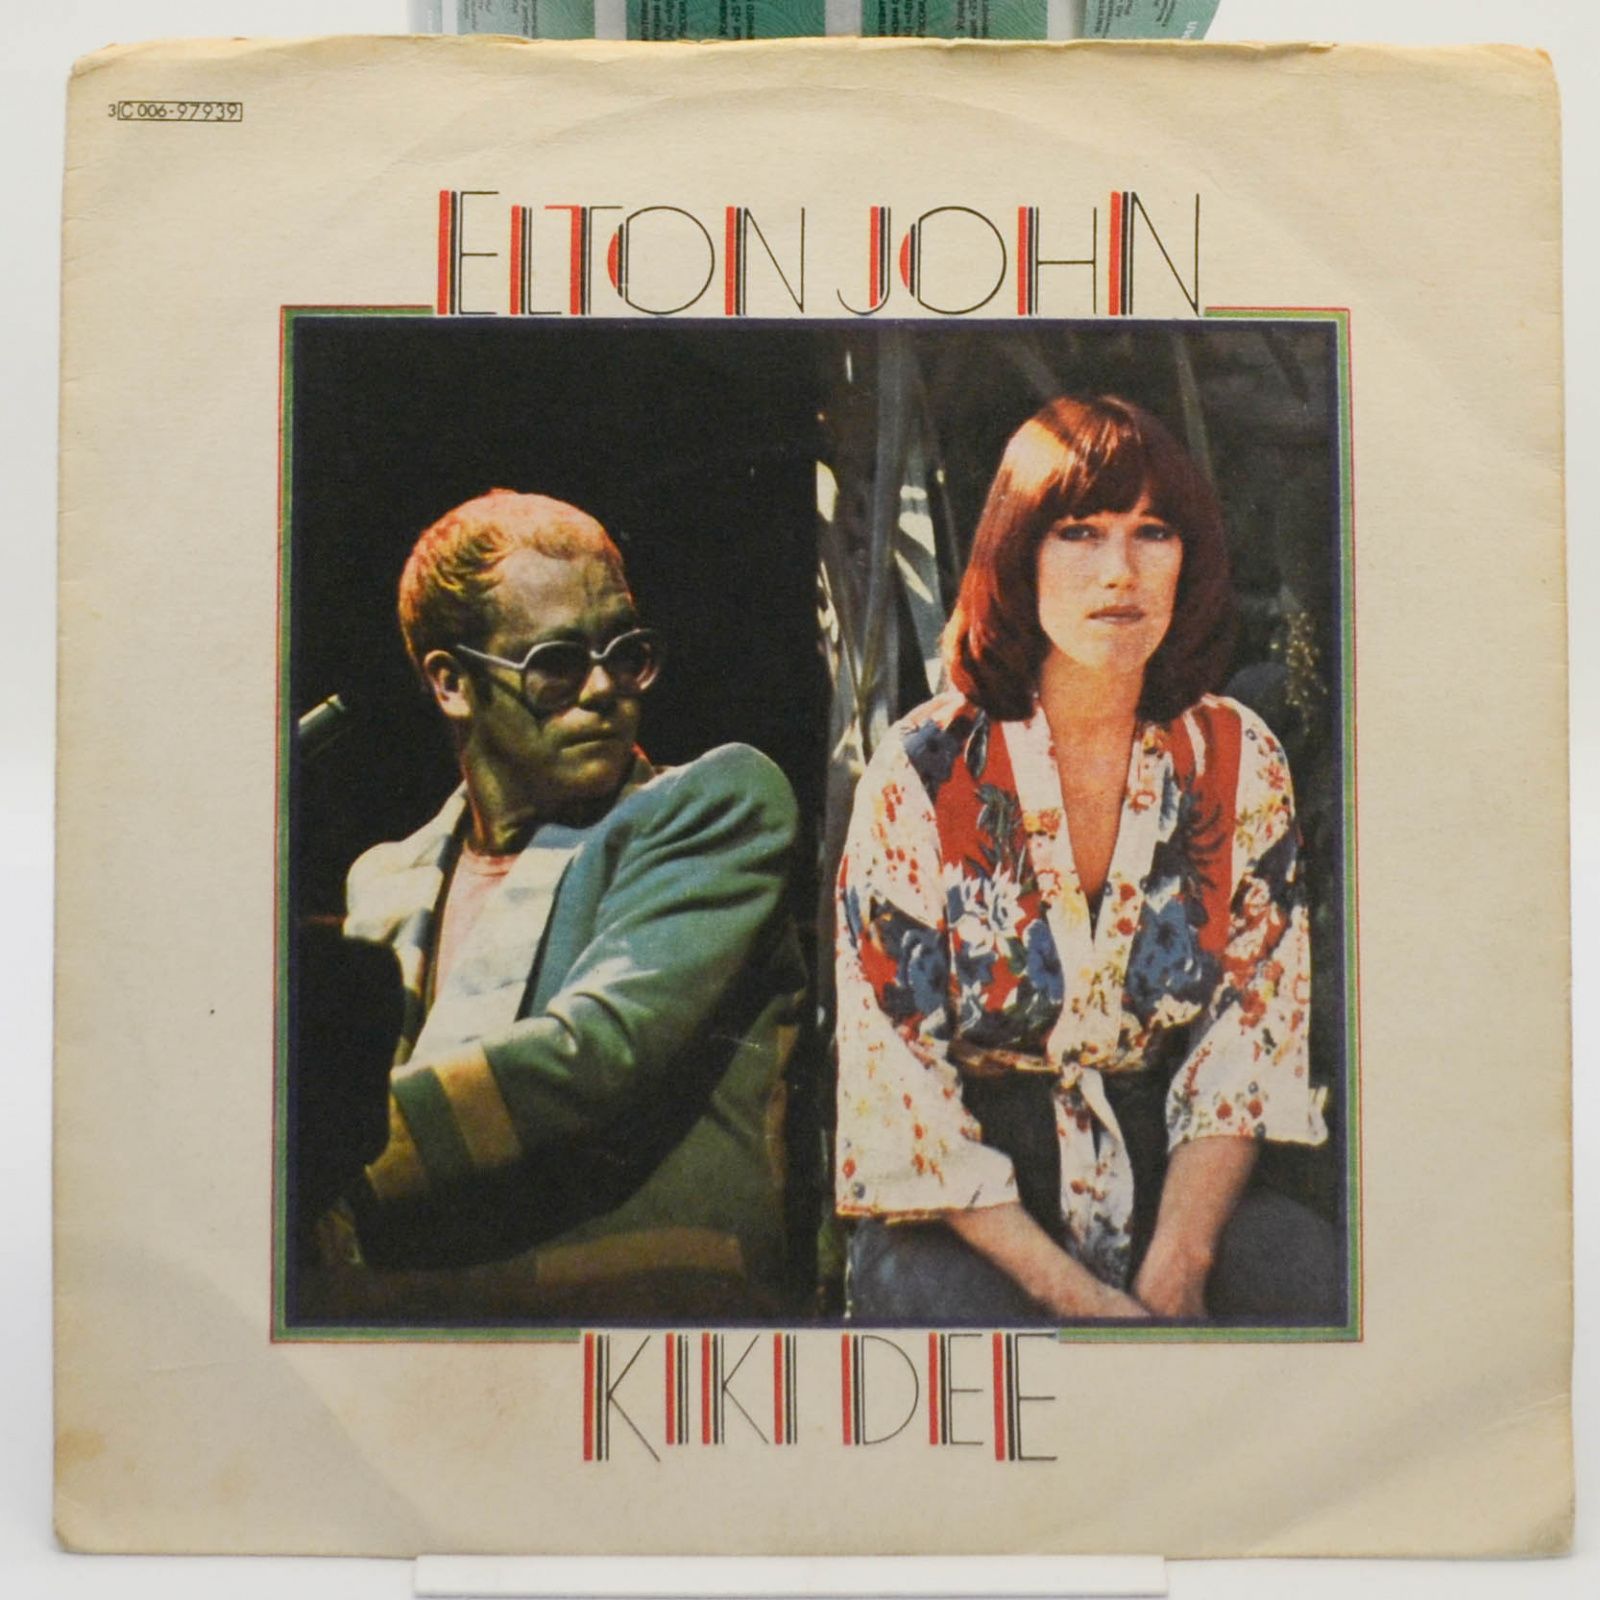 Elton John & Kiki Dee — Don't Go Breaking My Heart, 1976